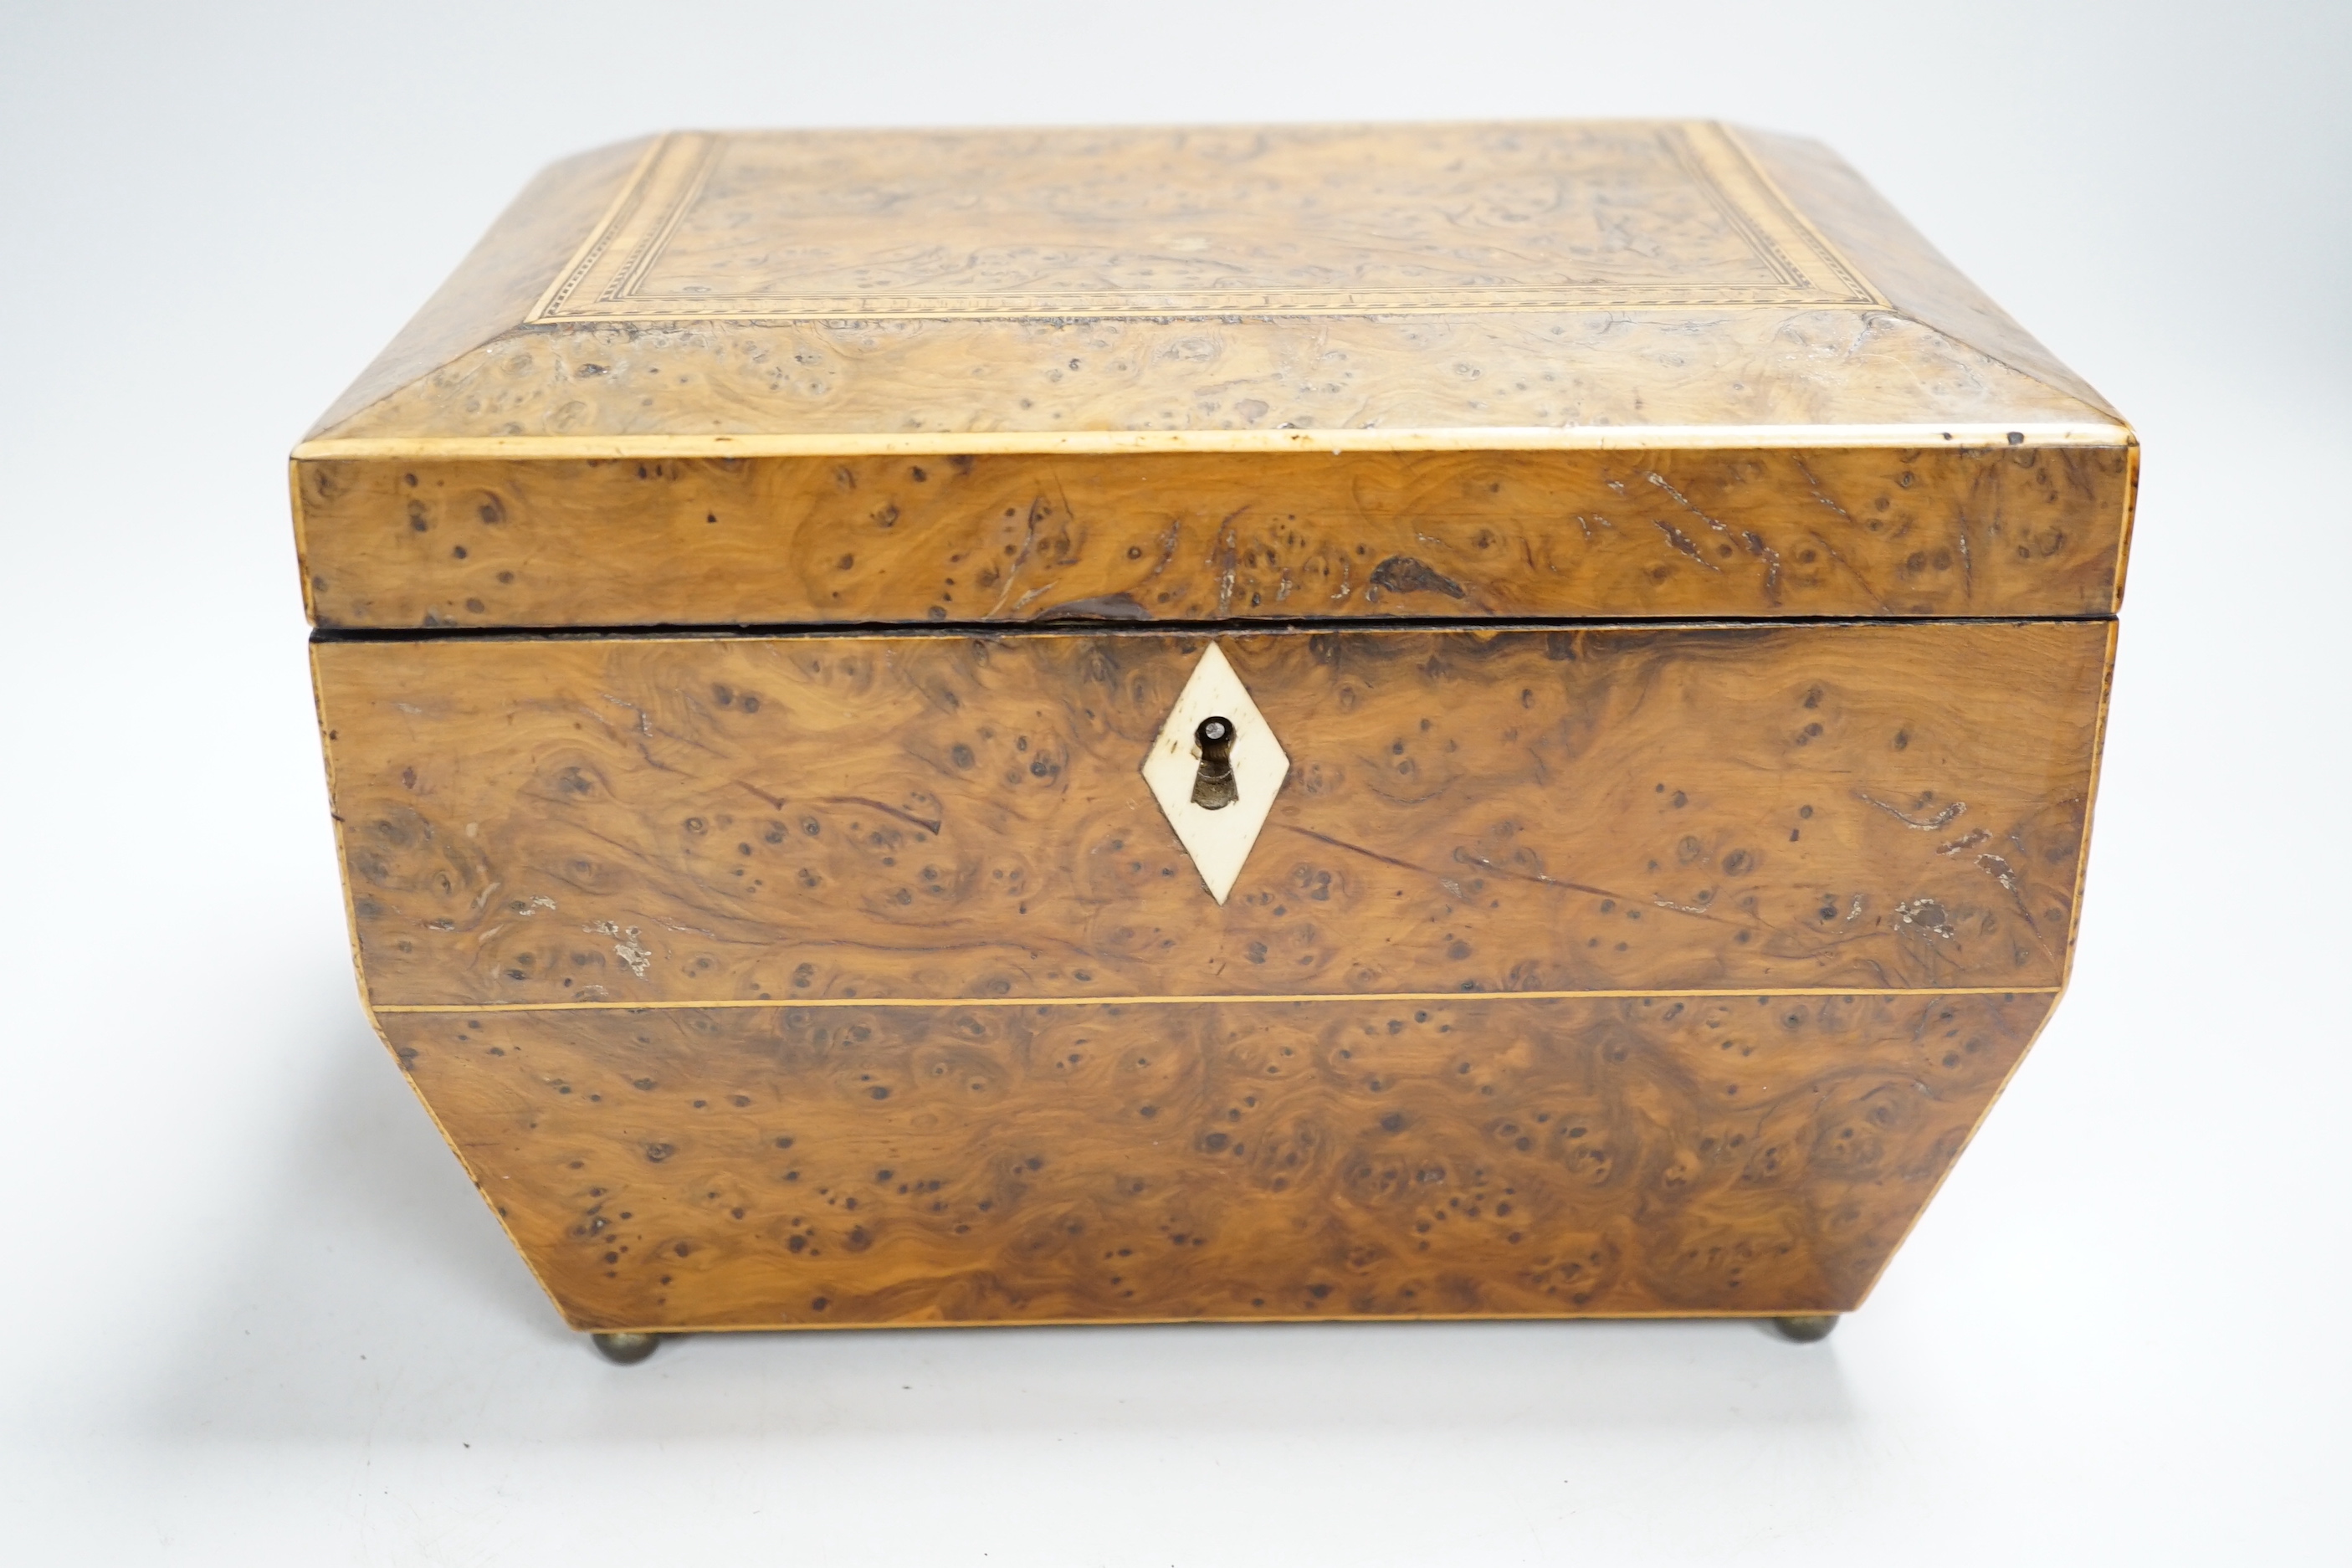 A Regency period burr yew casket with bone lozenge escutcheon, 23 x 18 x 16cm